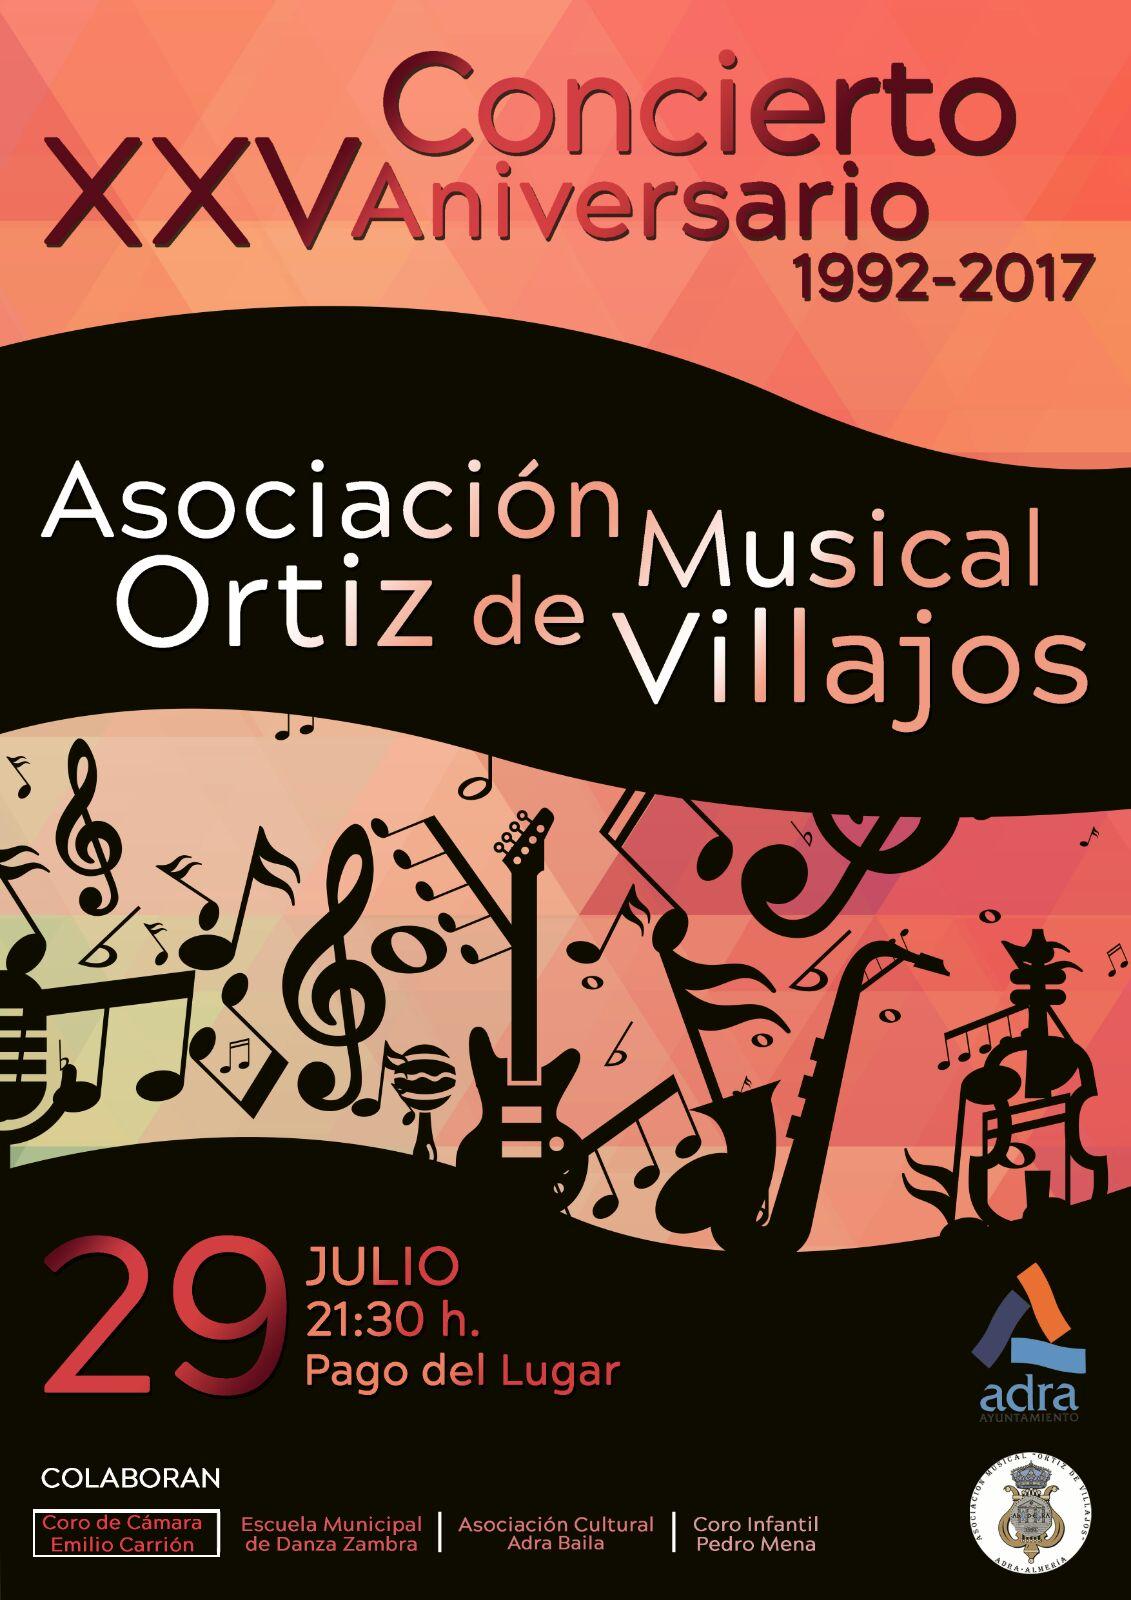 Concierto Adra 2017 - Asociacion Ortiz de Villajos